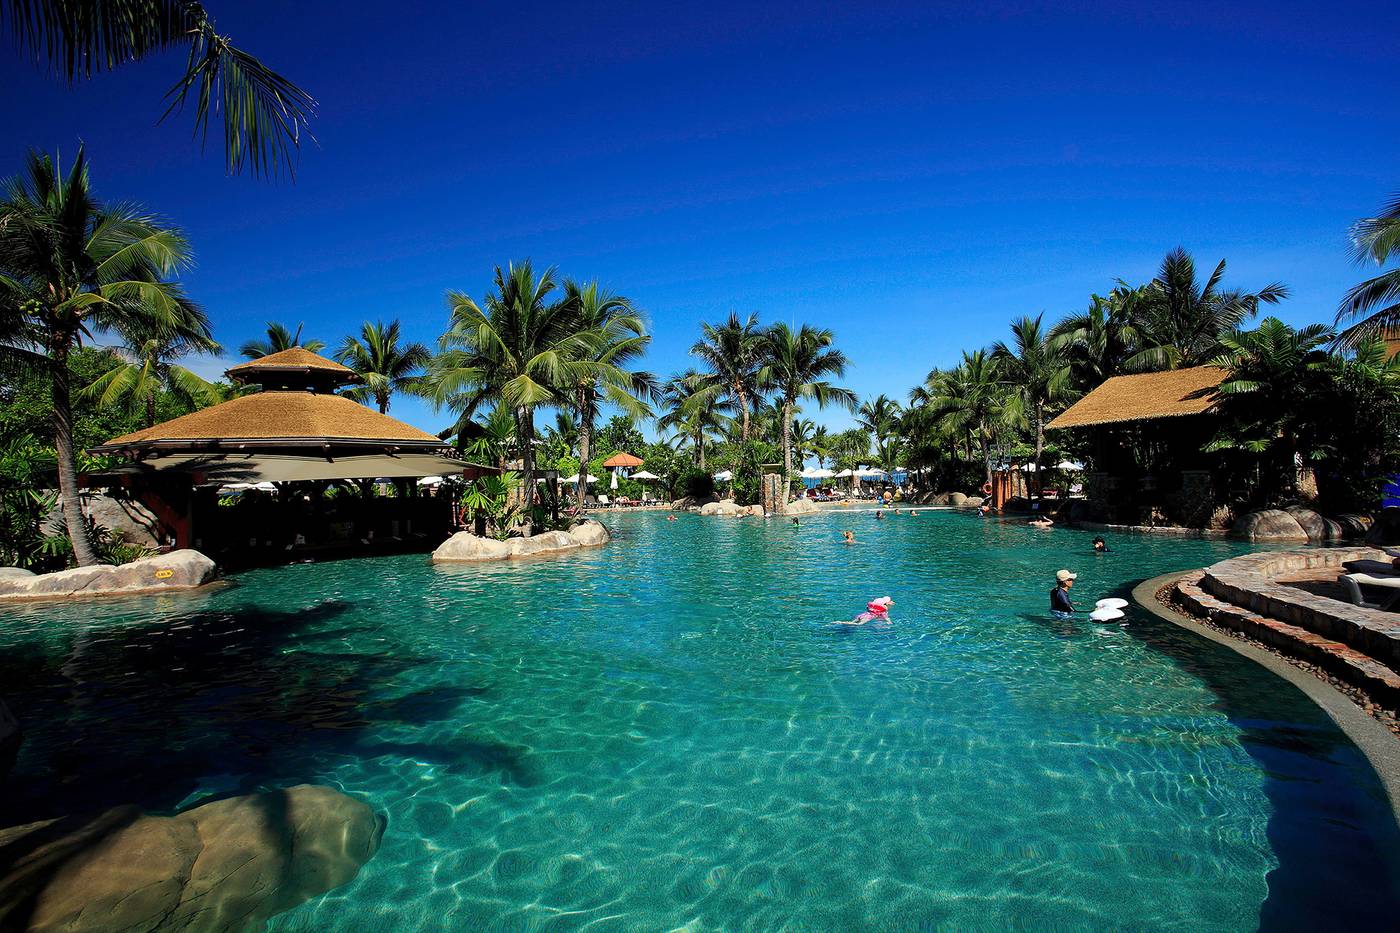 Centara Grand Mirage Beach Resort Pattaya - North Pattaya, Pattaya - On ...